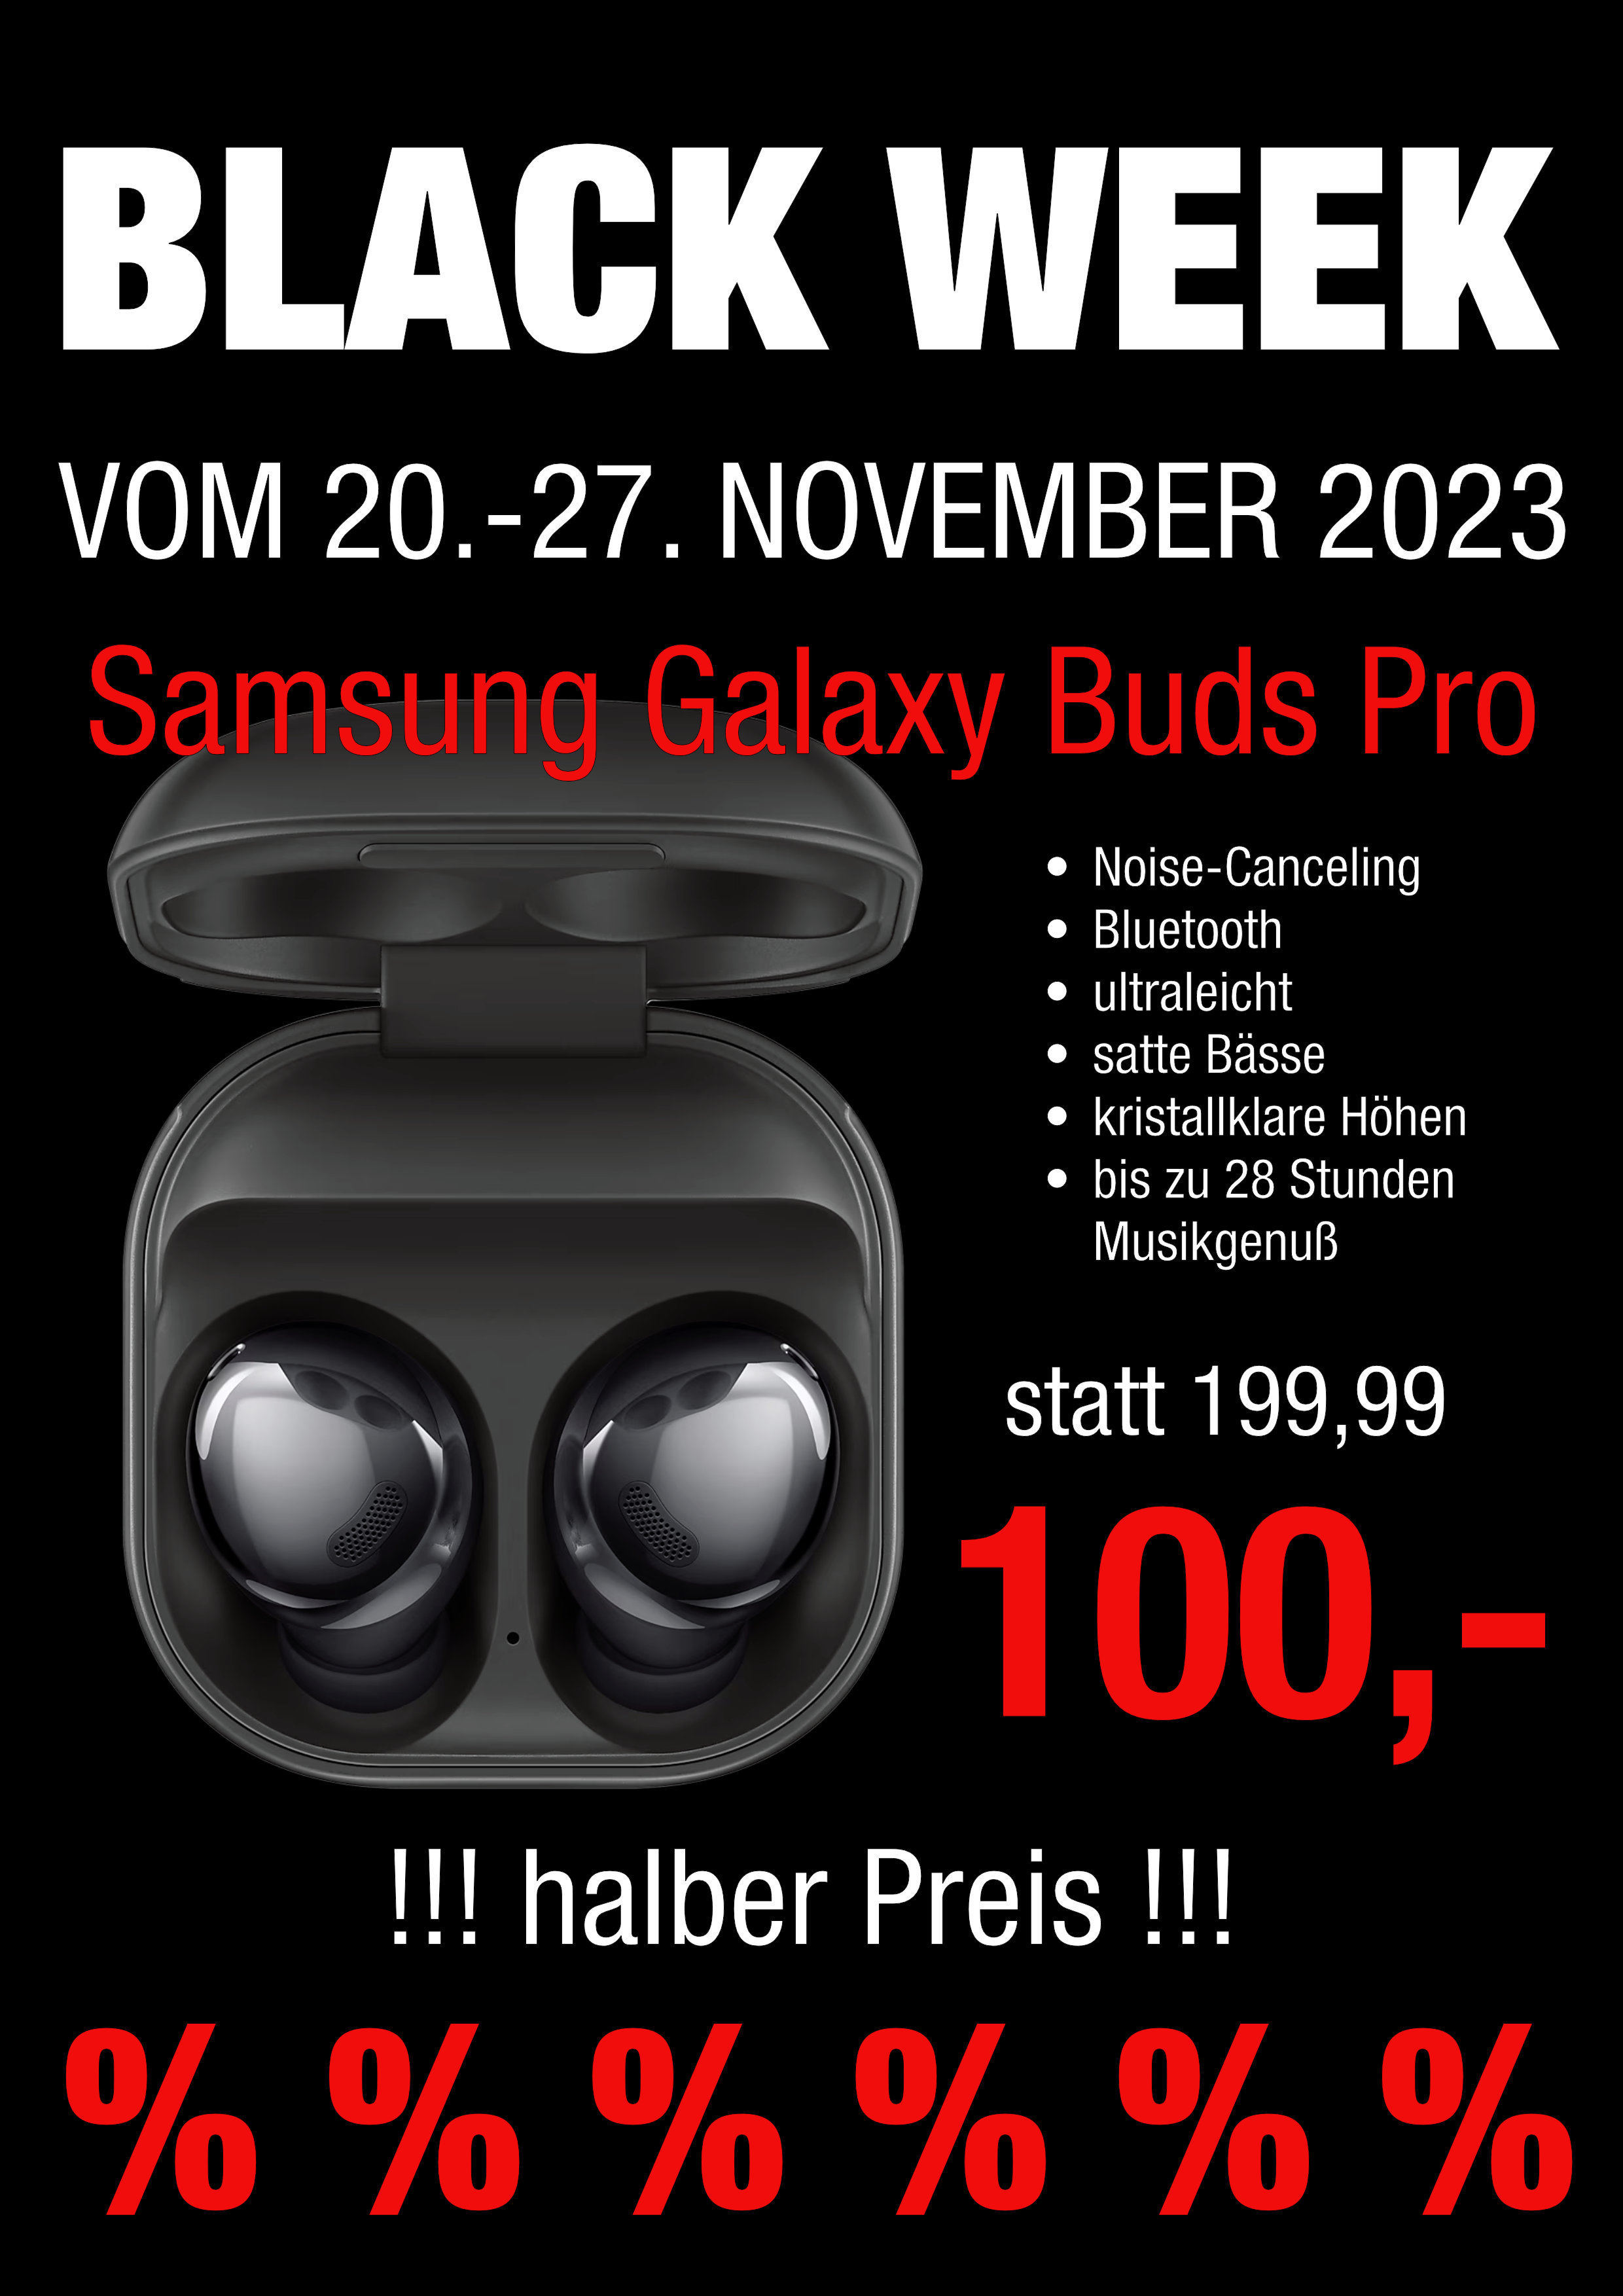 BlackWeek GalaxyBudsPro zum halben Preis